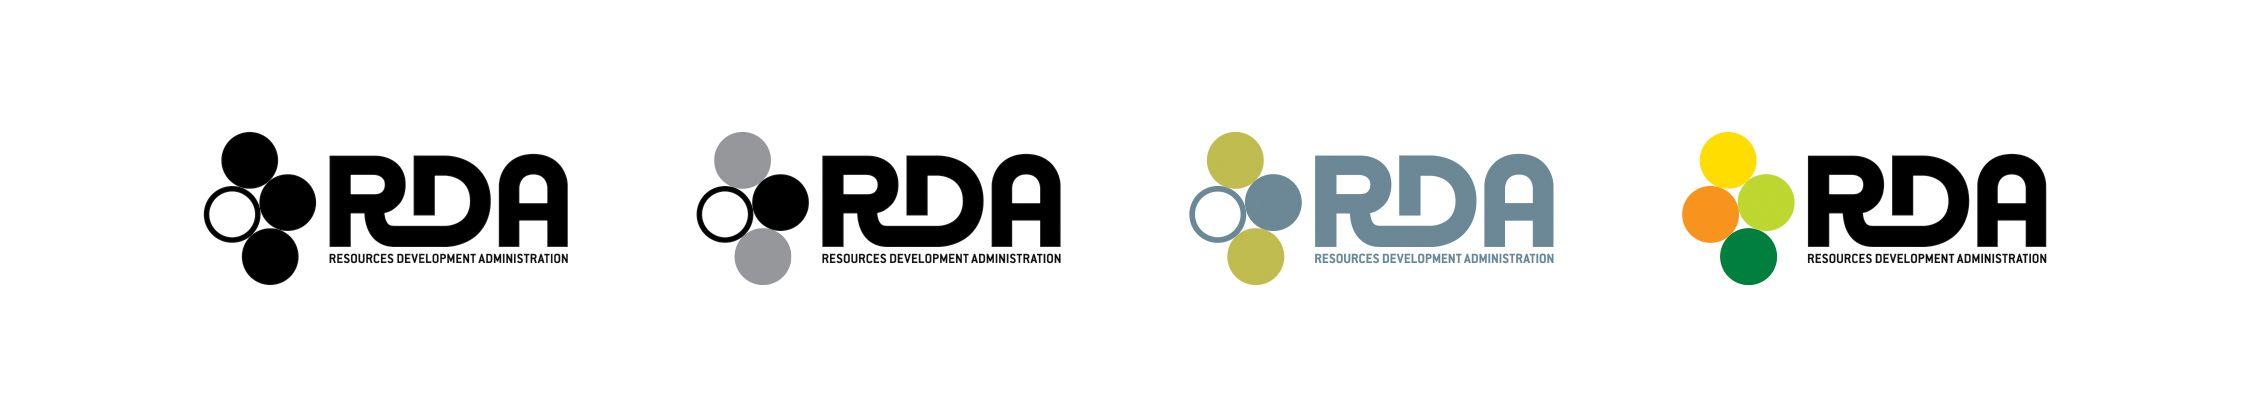 Rda Logo - The Pre History Of The RDA Logo From James Cameron's Avatar